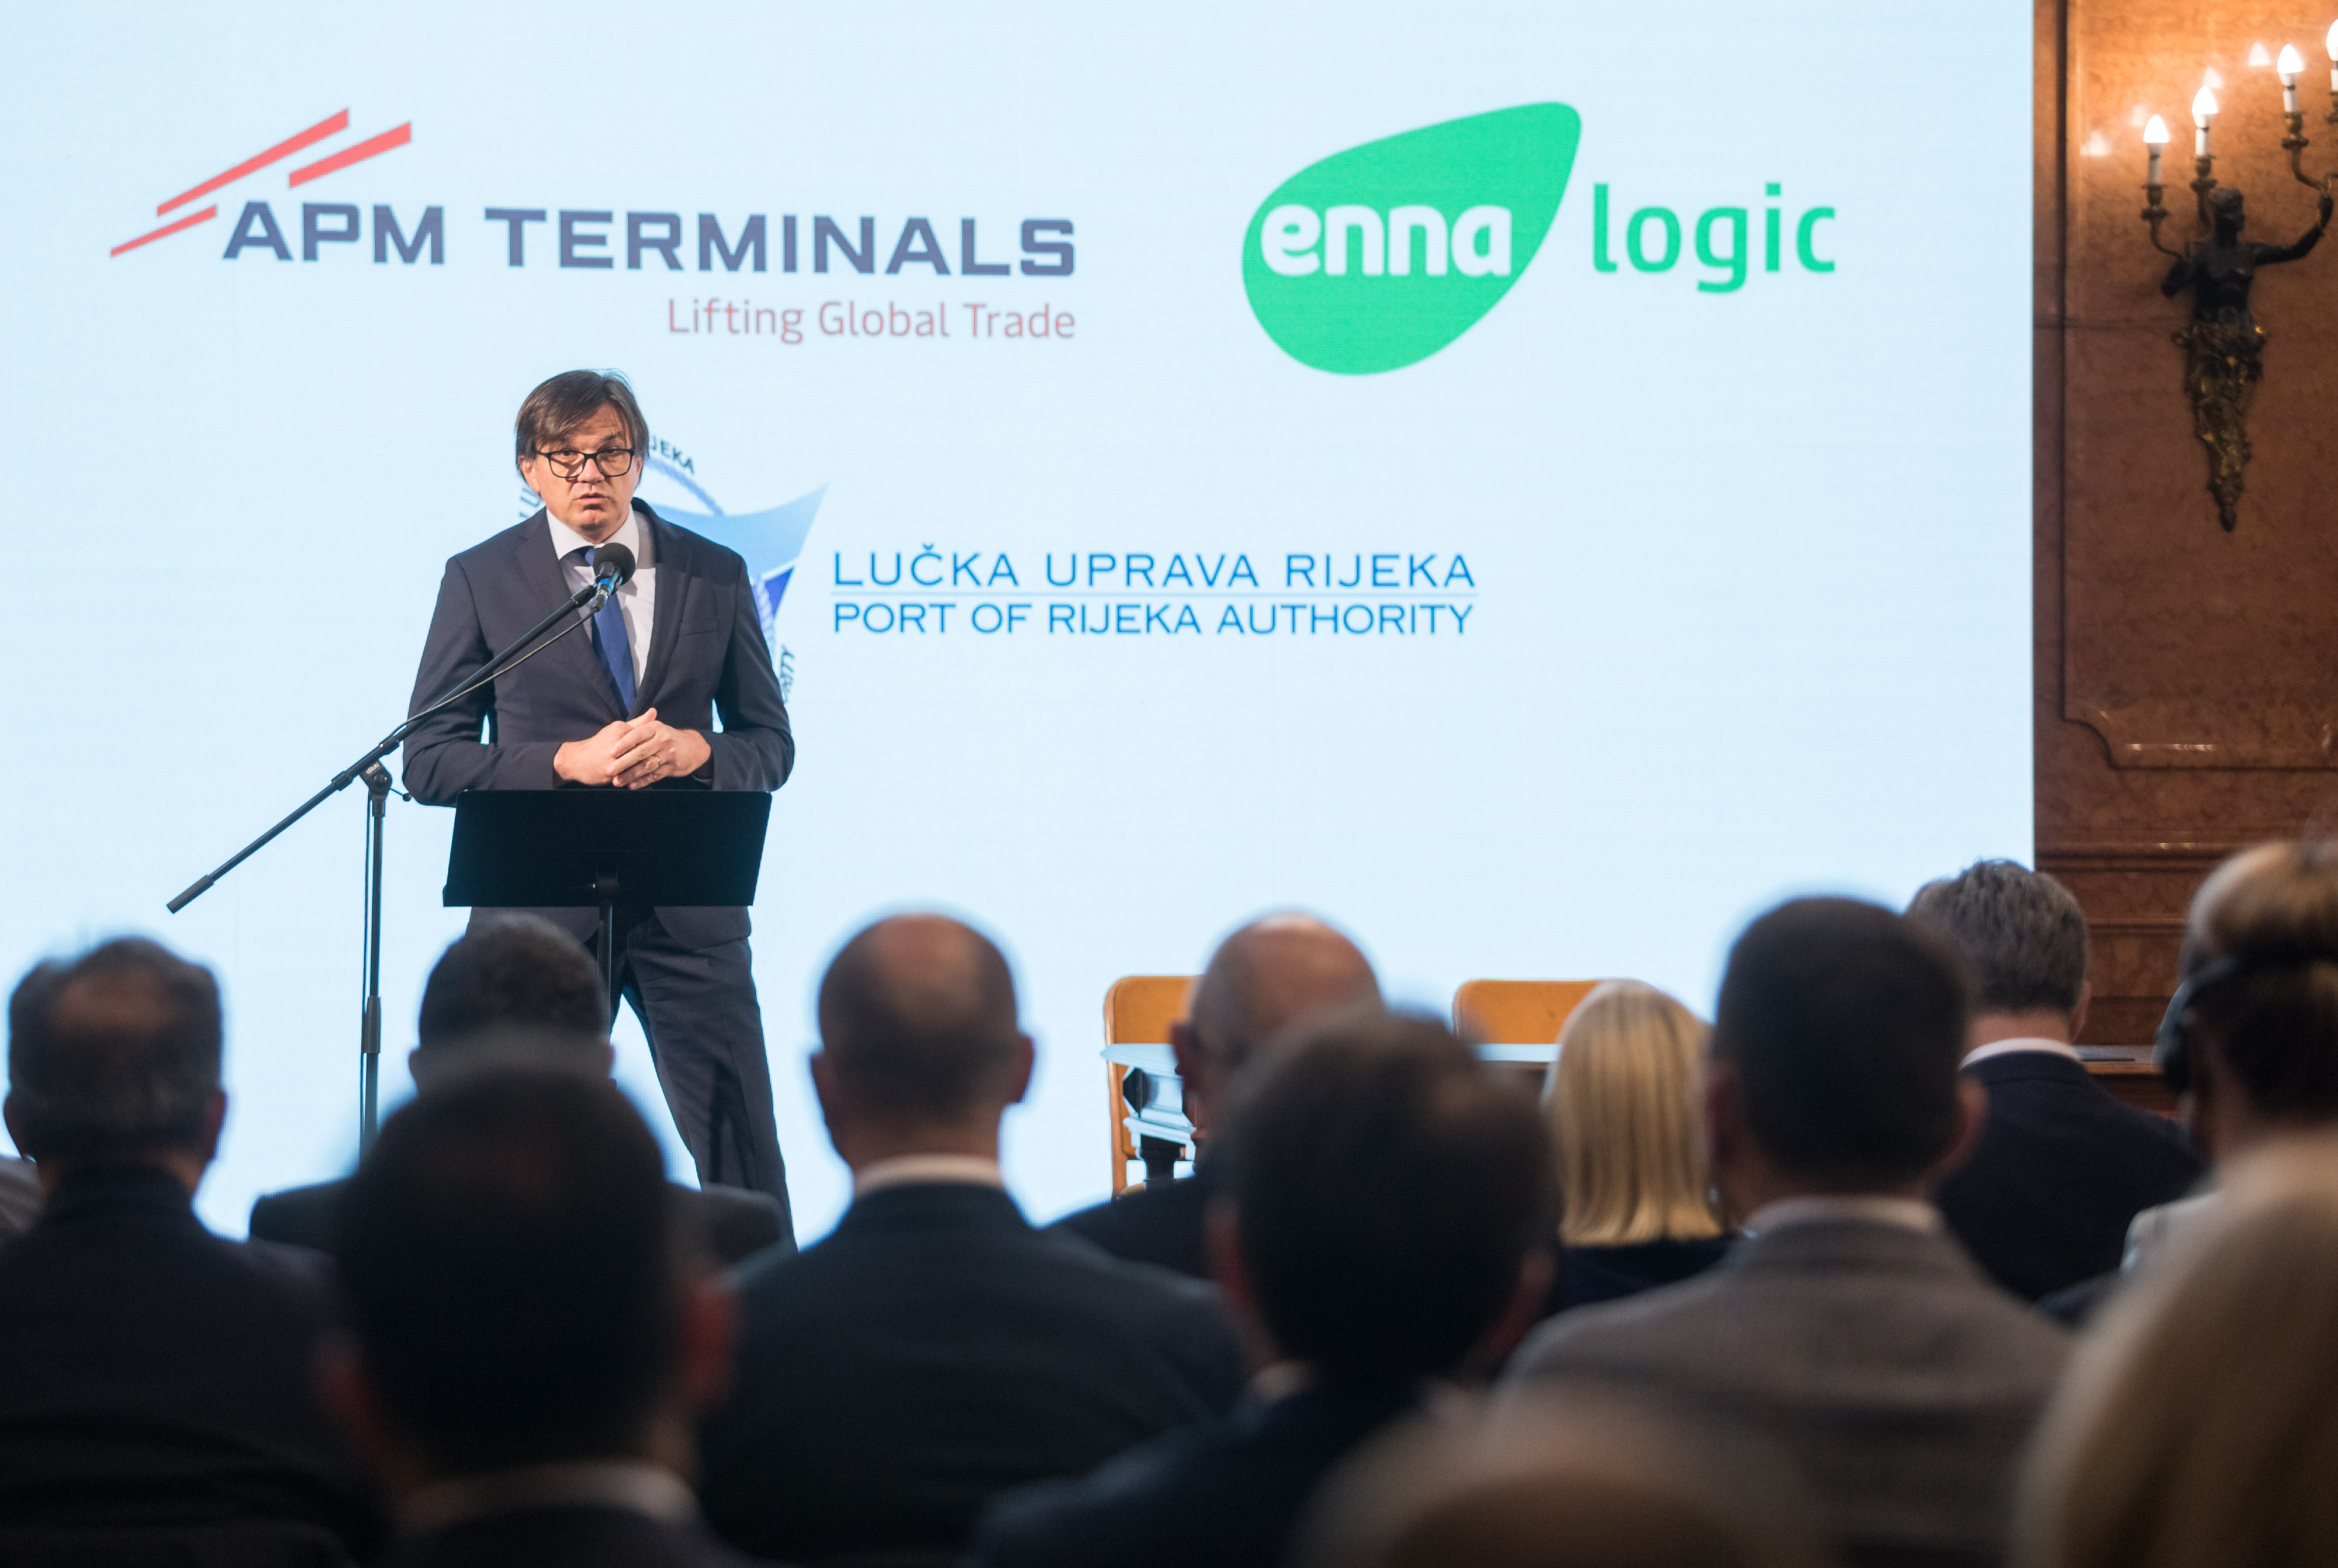 DAN ZA POVIJEST: Potpisan ugovor o koncesiji za razvoj i gospodarsko korištenje Zagreb Deep Sea kontejnerskim terminalom u luci Rijeka